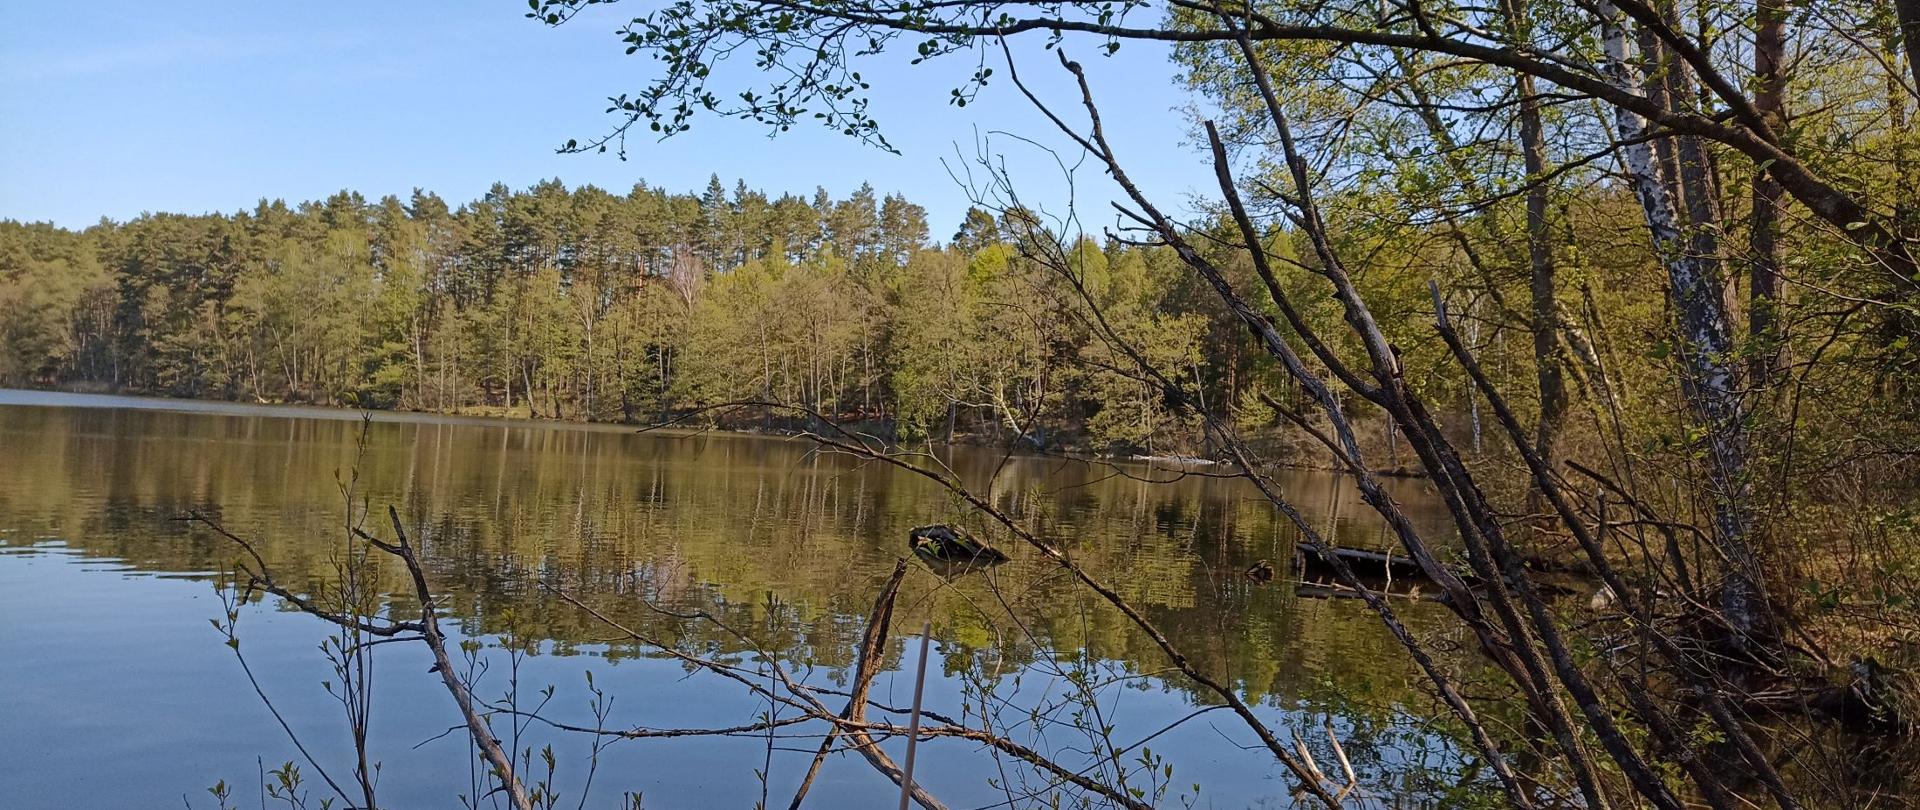 Na zdjęciu widać jezioro okolone gałęziami drzew. Jest wiosna. Pąki puszczają liście. 